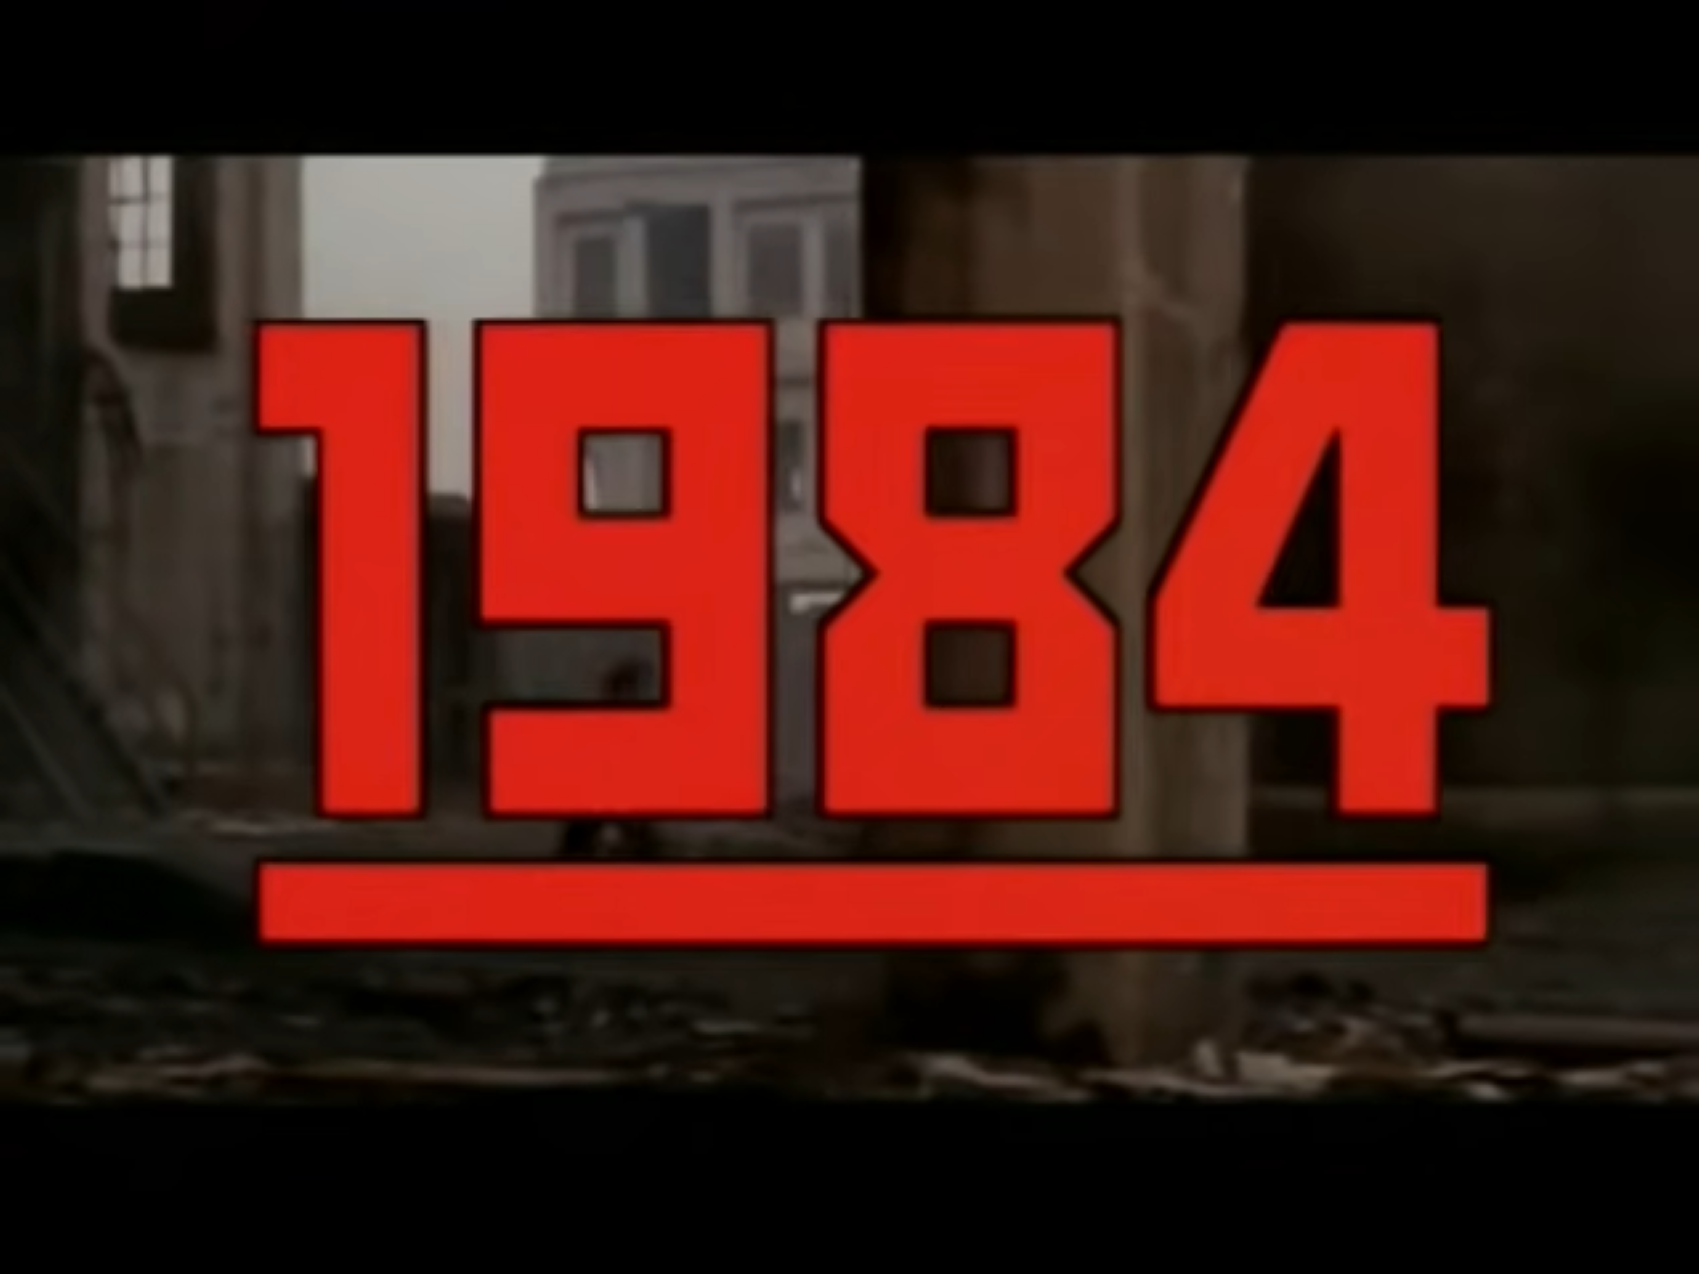 1984 ending analysis